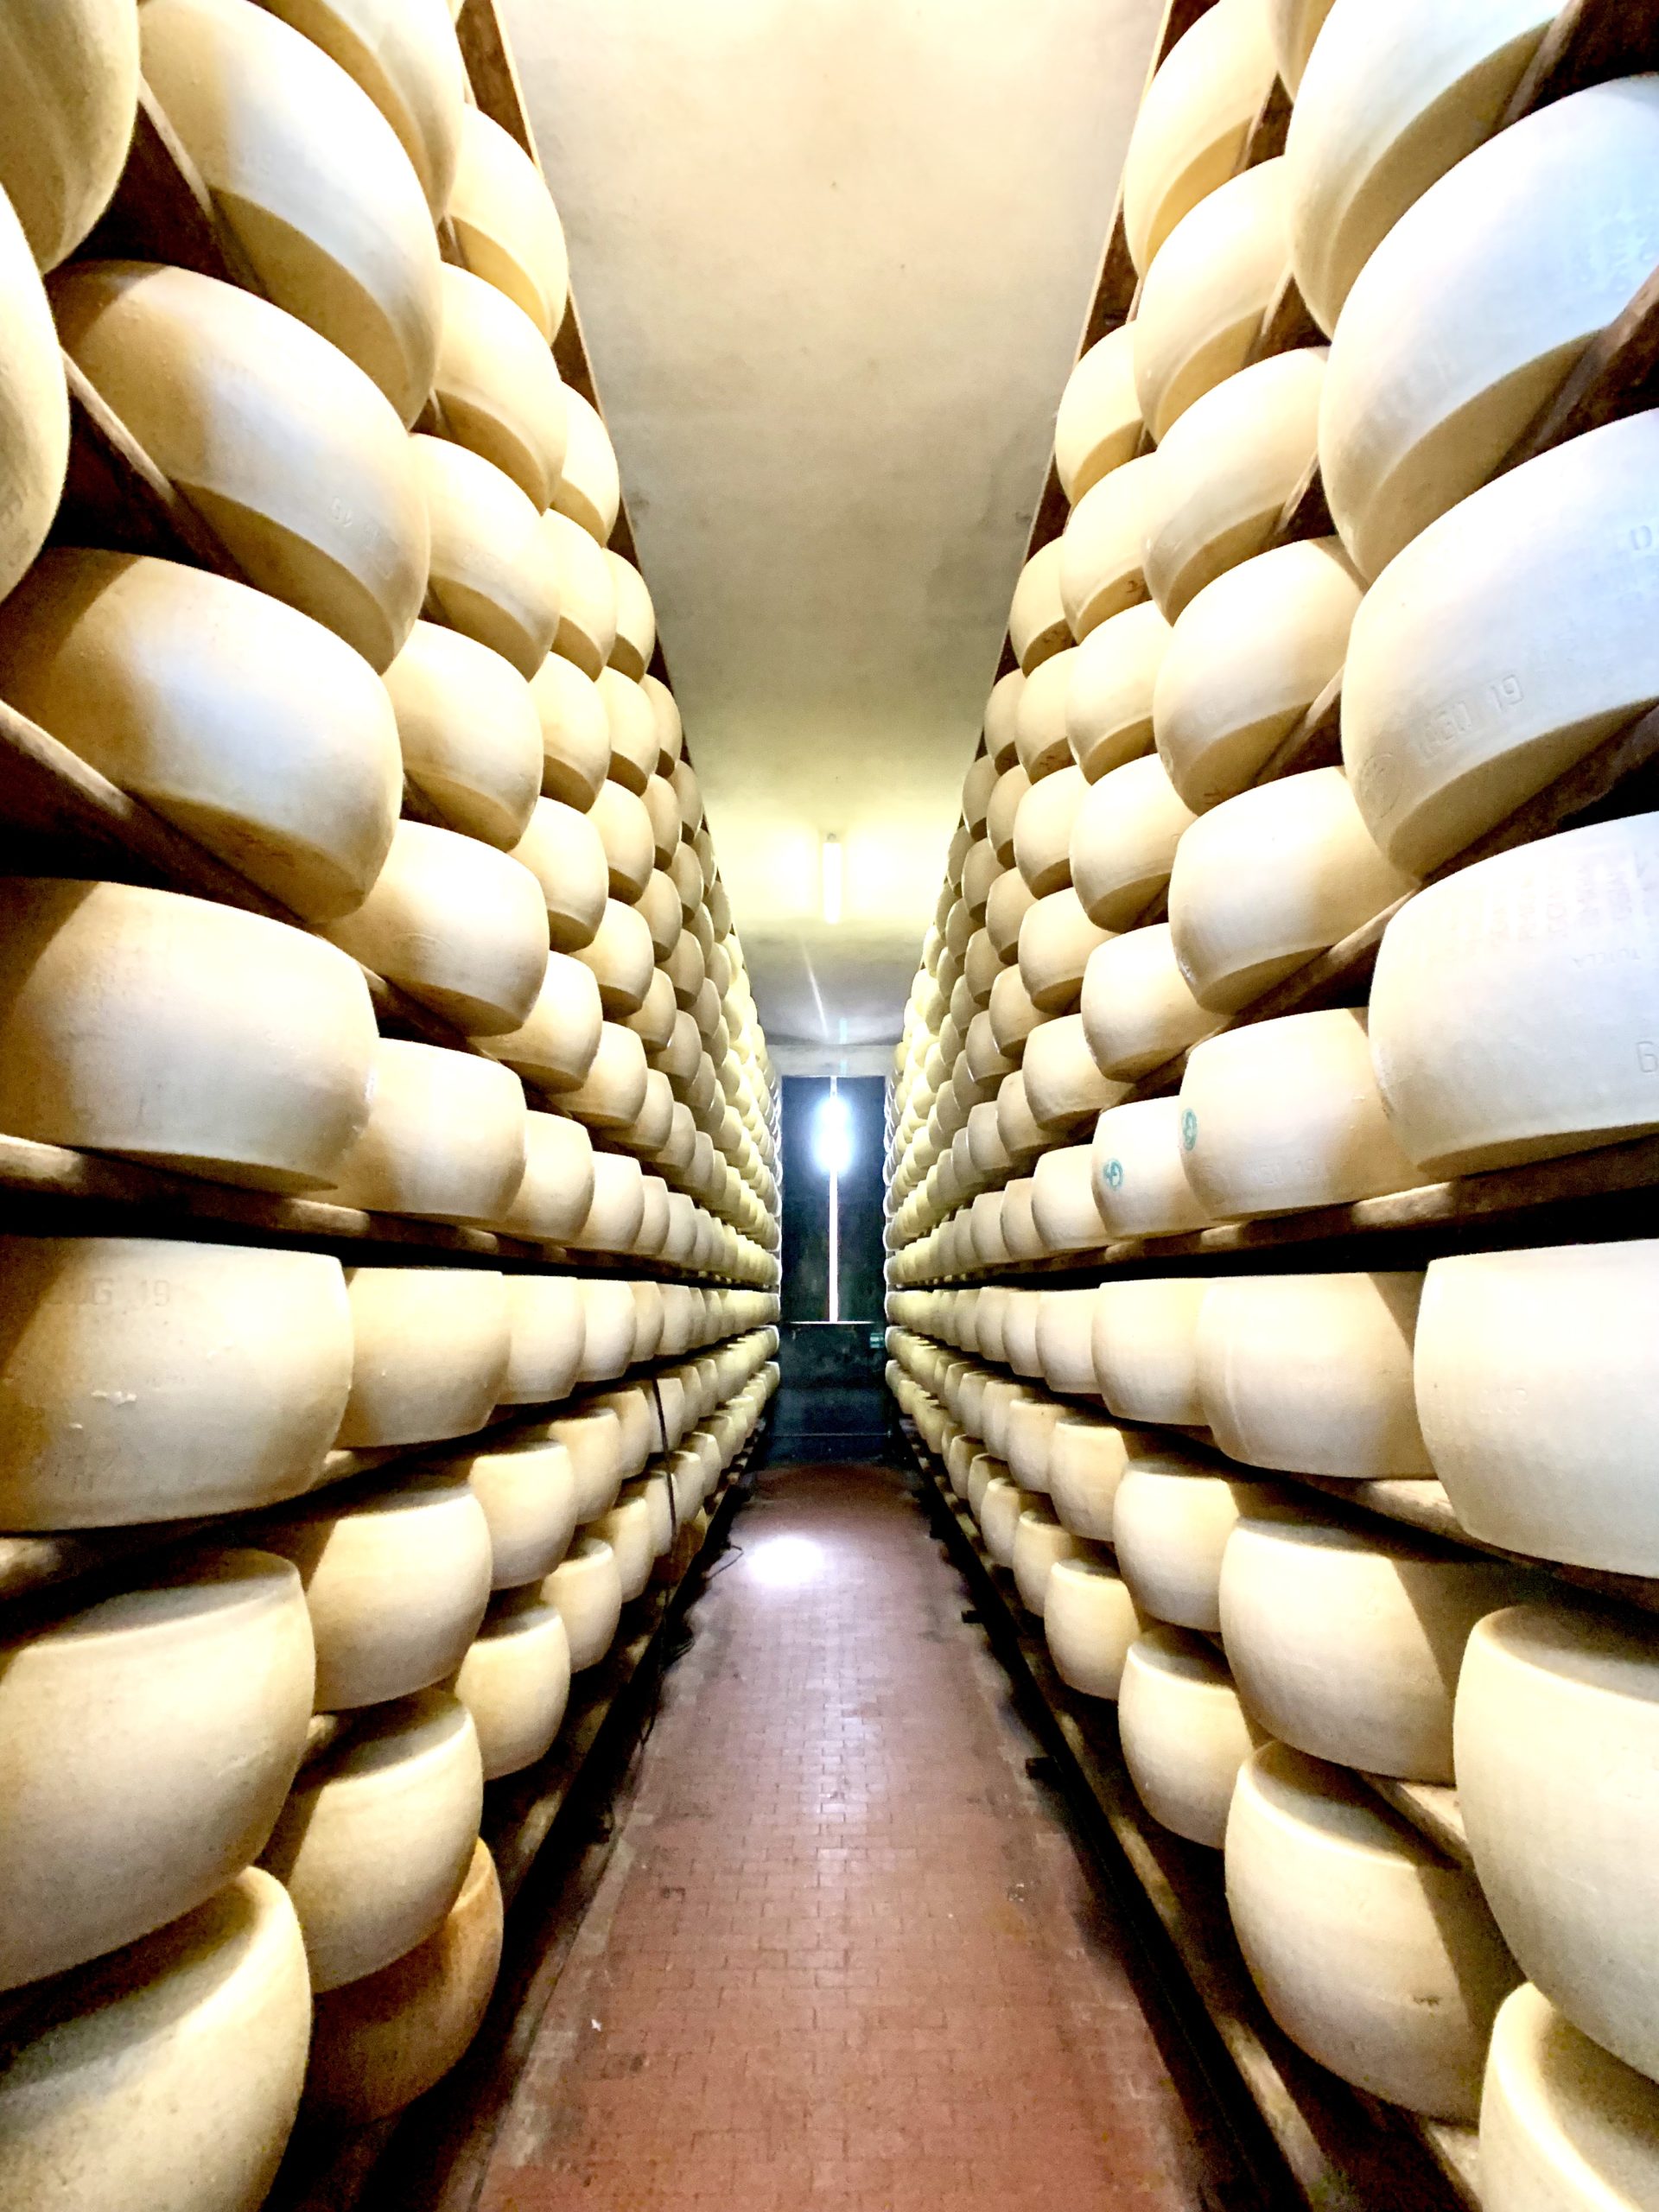 Cheese rounds at the Azienda Agricola Guareschi parmigiano-reggiano farm in Parma, Italy